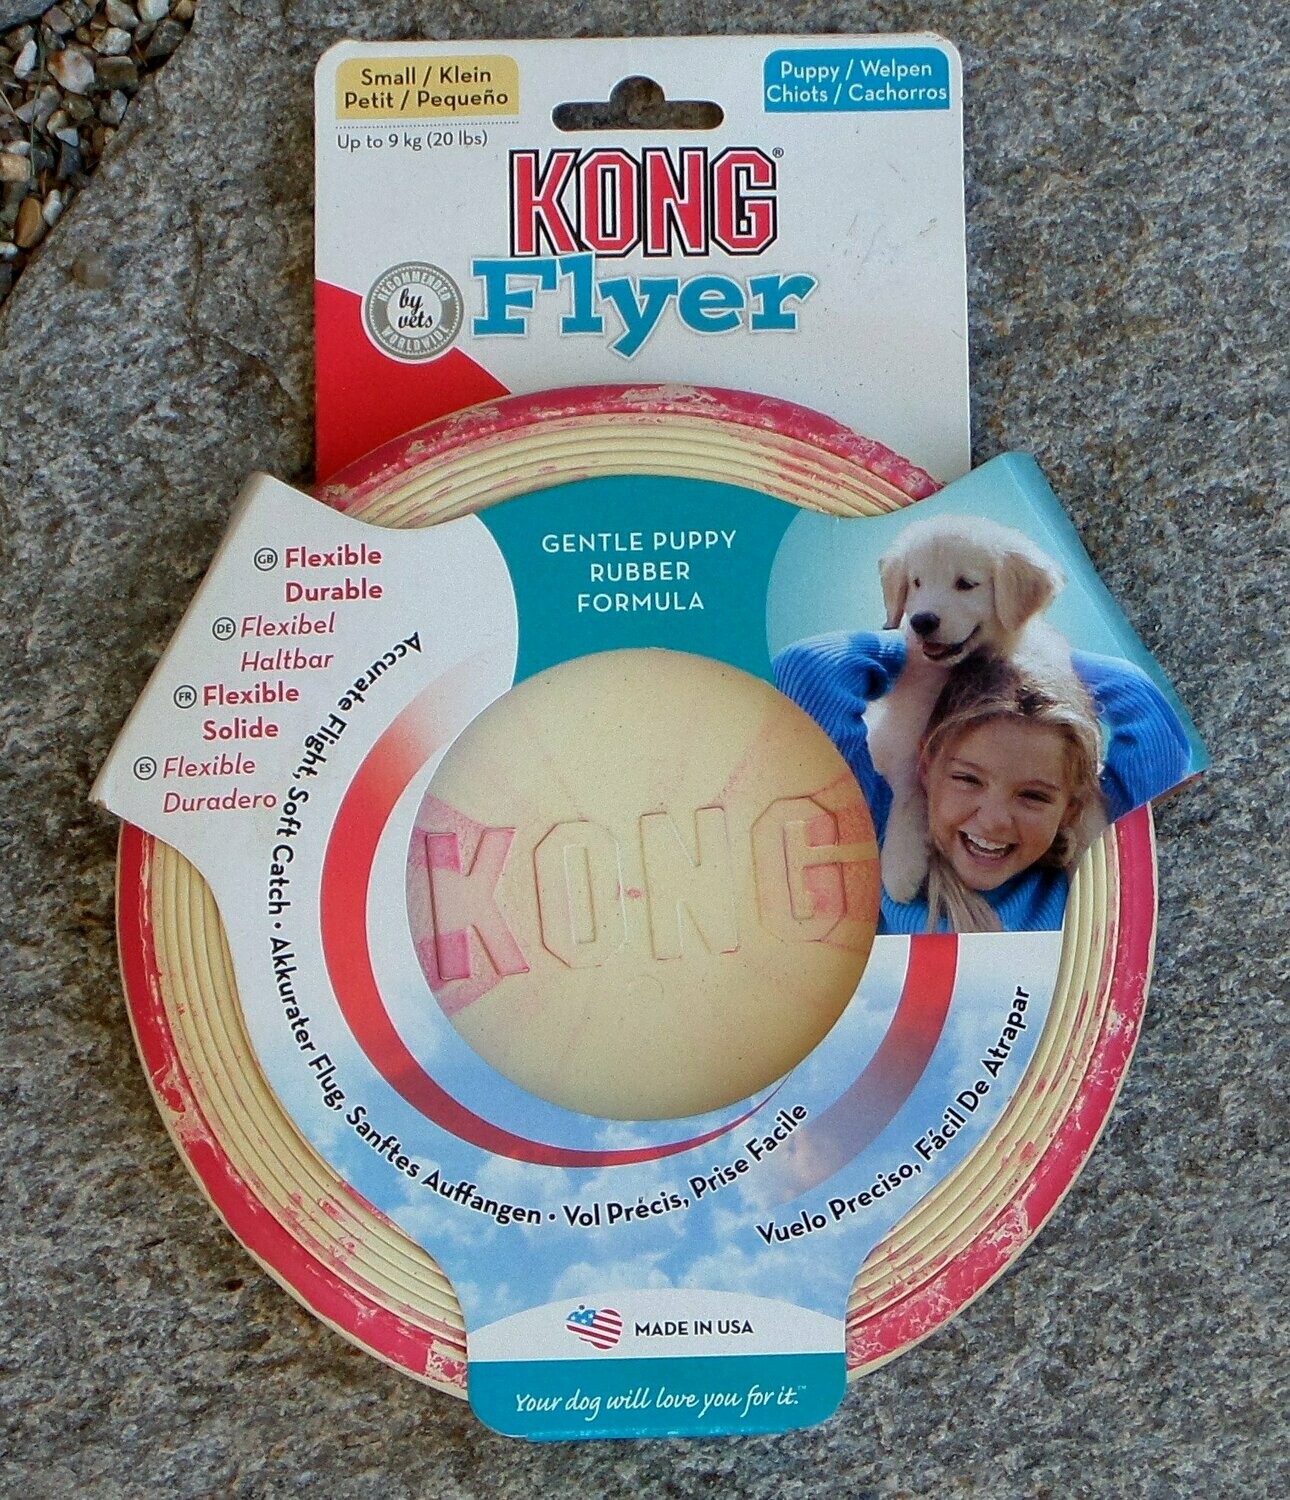 Puppy-Frisbee